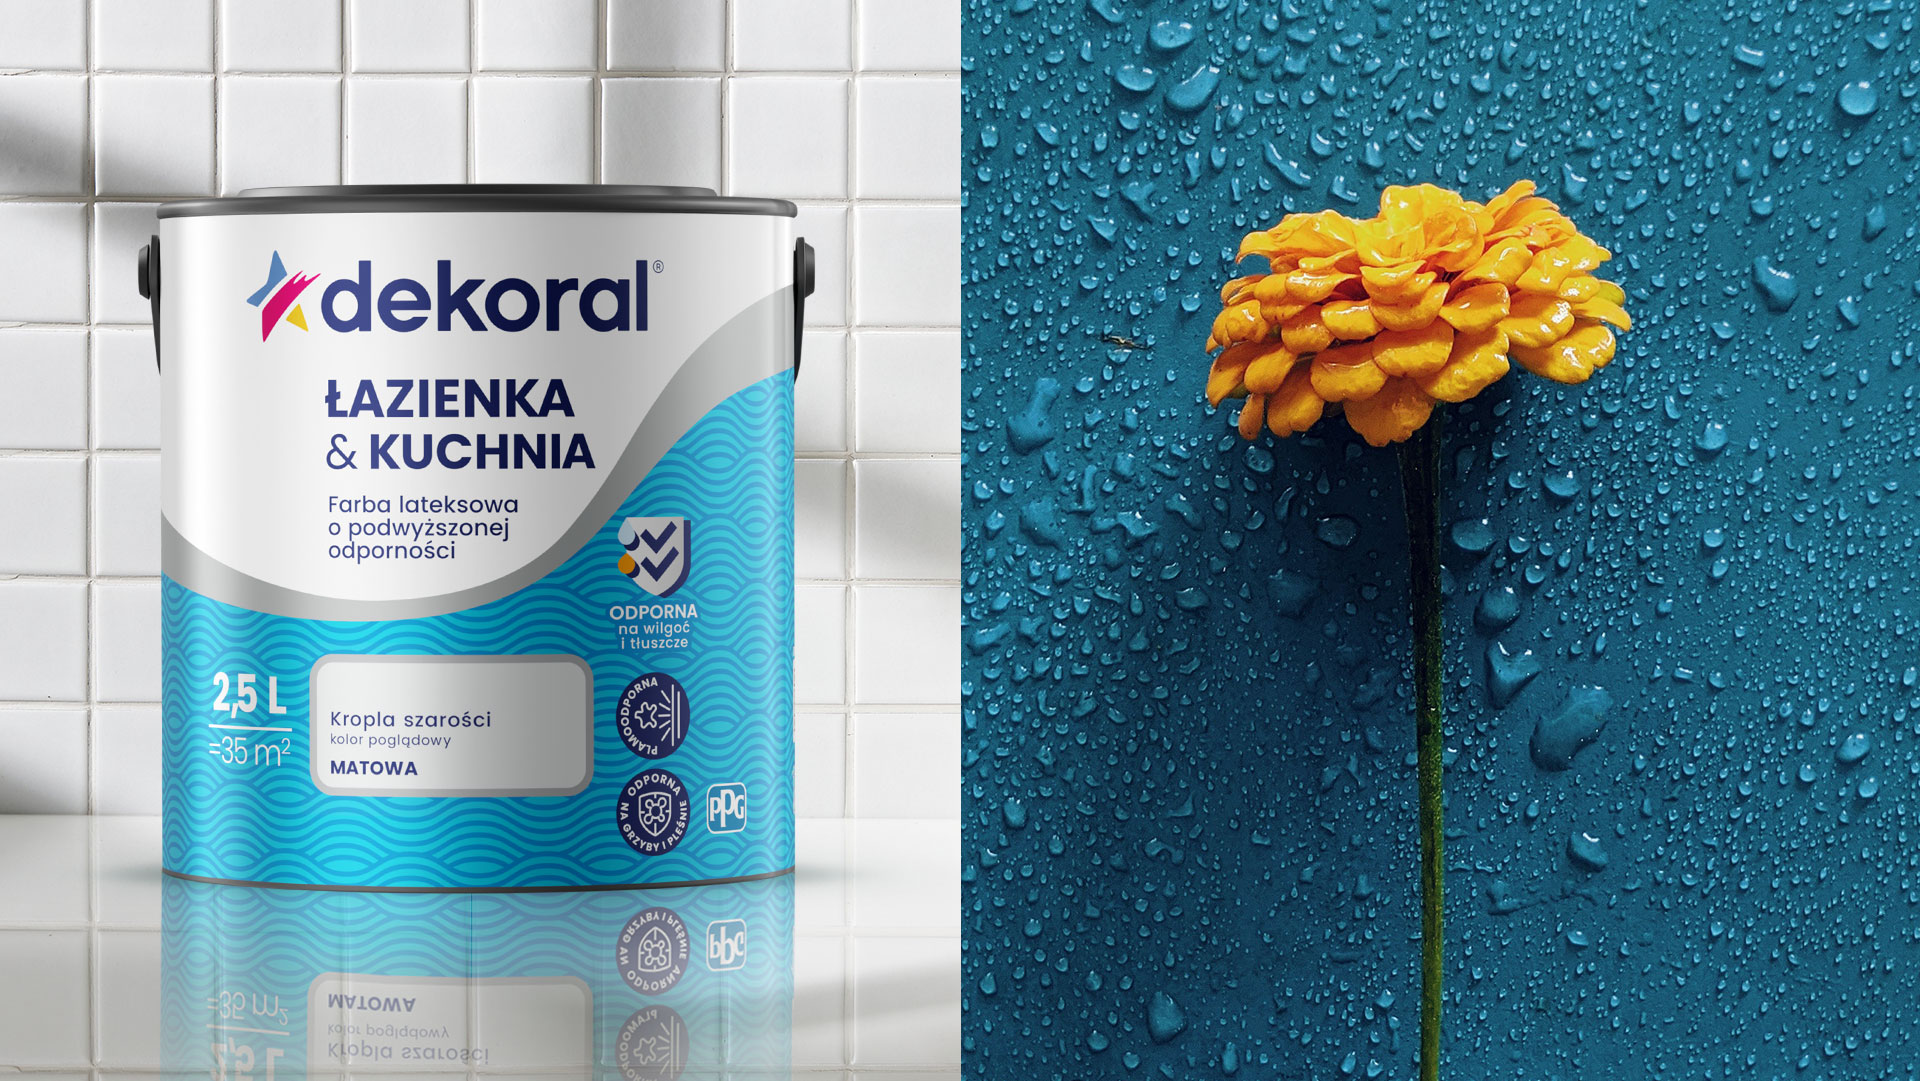 Dekoral rebranding - po lewo wizualizacja puszki Dekoral łazienka i kuchnia, po prawo zdjęcie żółtego kwiatka na niebieskim tle